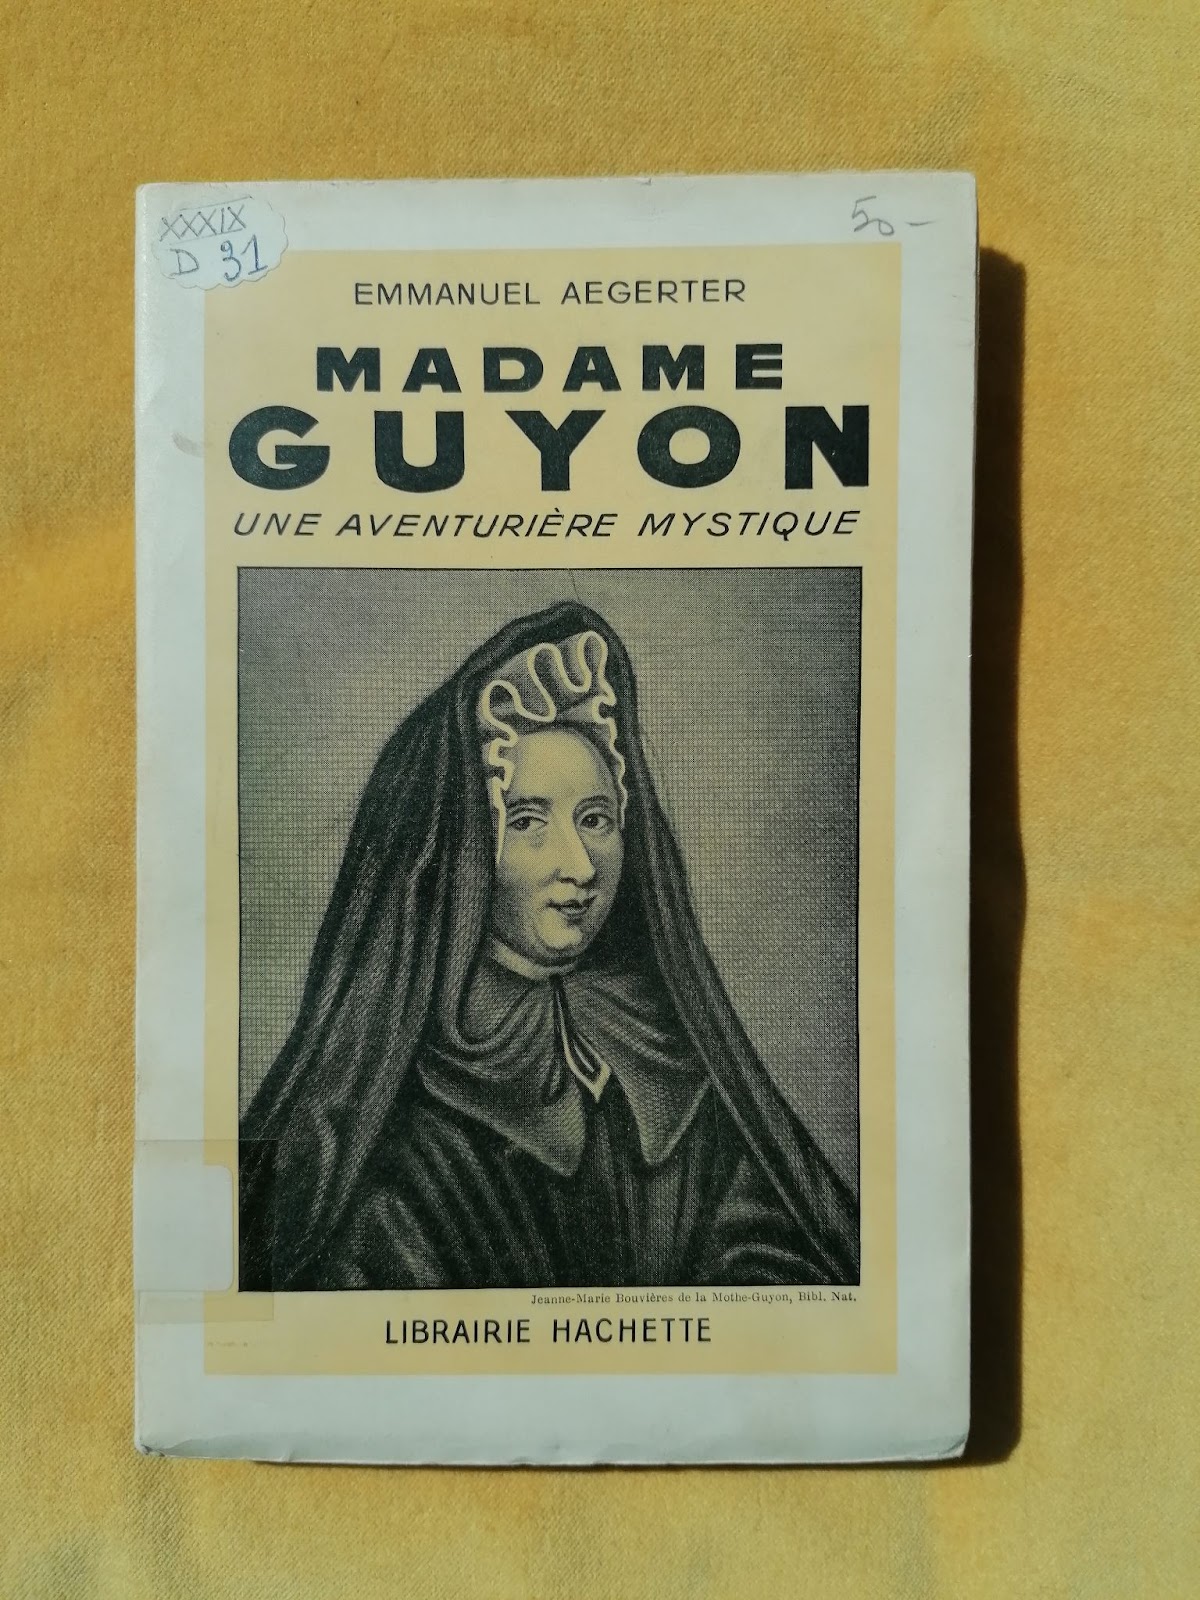 Madame Guyon: une aventurière mystique (1941)